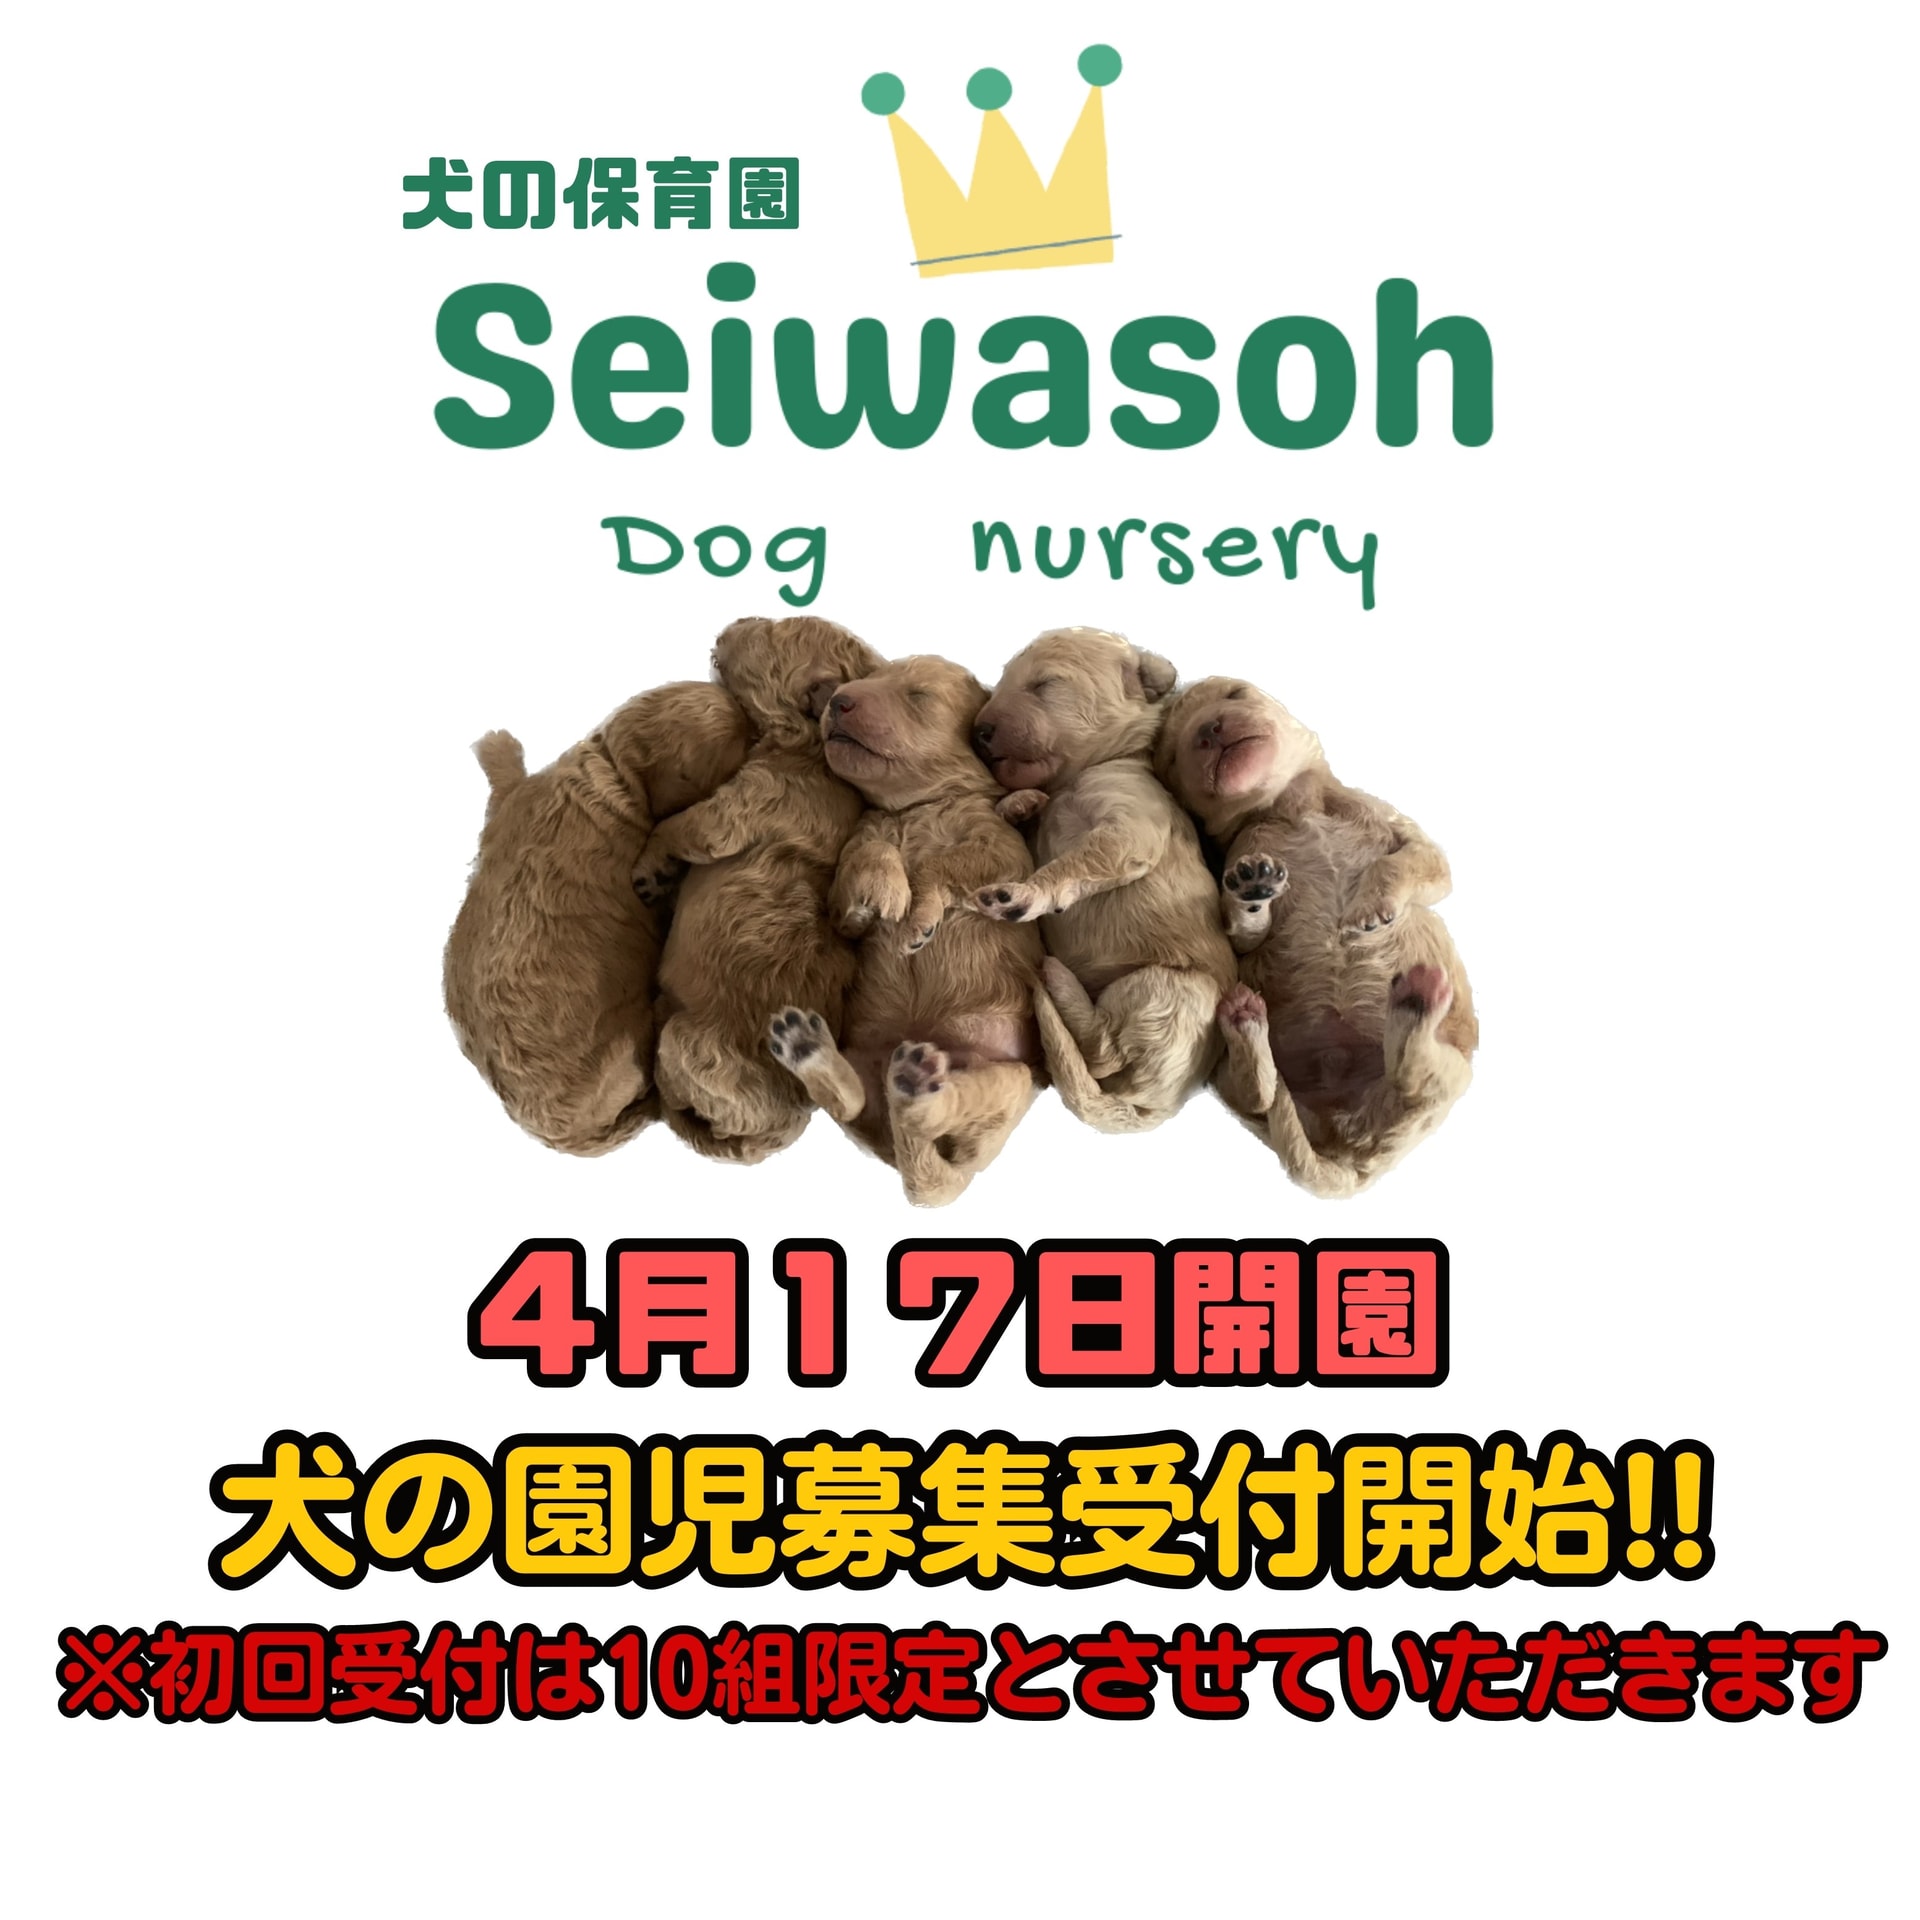 『犬の保育園 Seiwasoh dog nursery』犬の園児募集開始のお知らせ